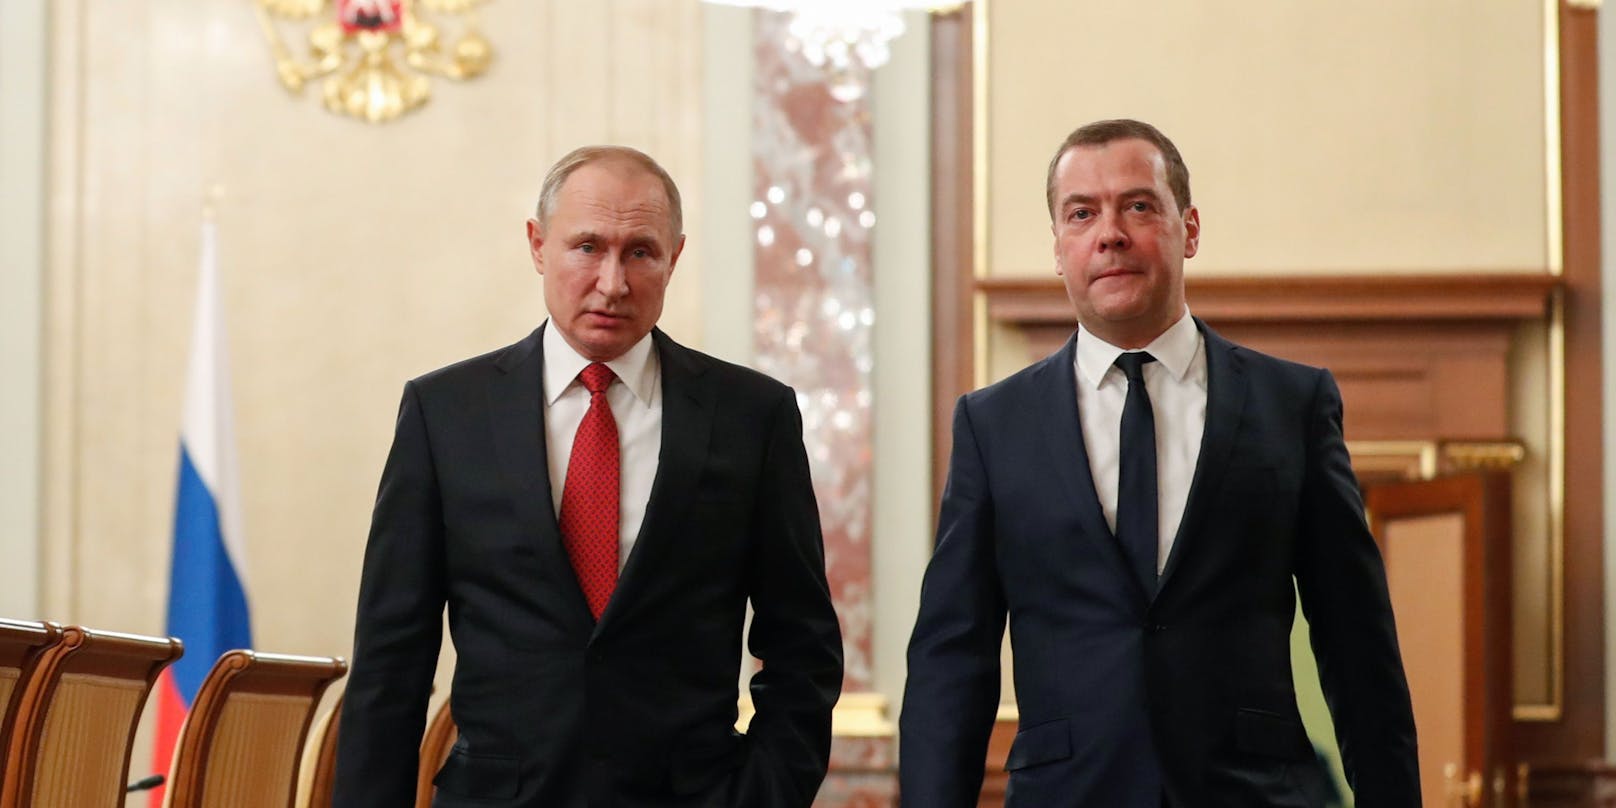 Waldimir Putin und Dmitry Medwedew - hier auf einem Foto aus dem Jahr 2020. Von&nbsp;2008 bis 2012 war Medwedew Präsident.